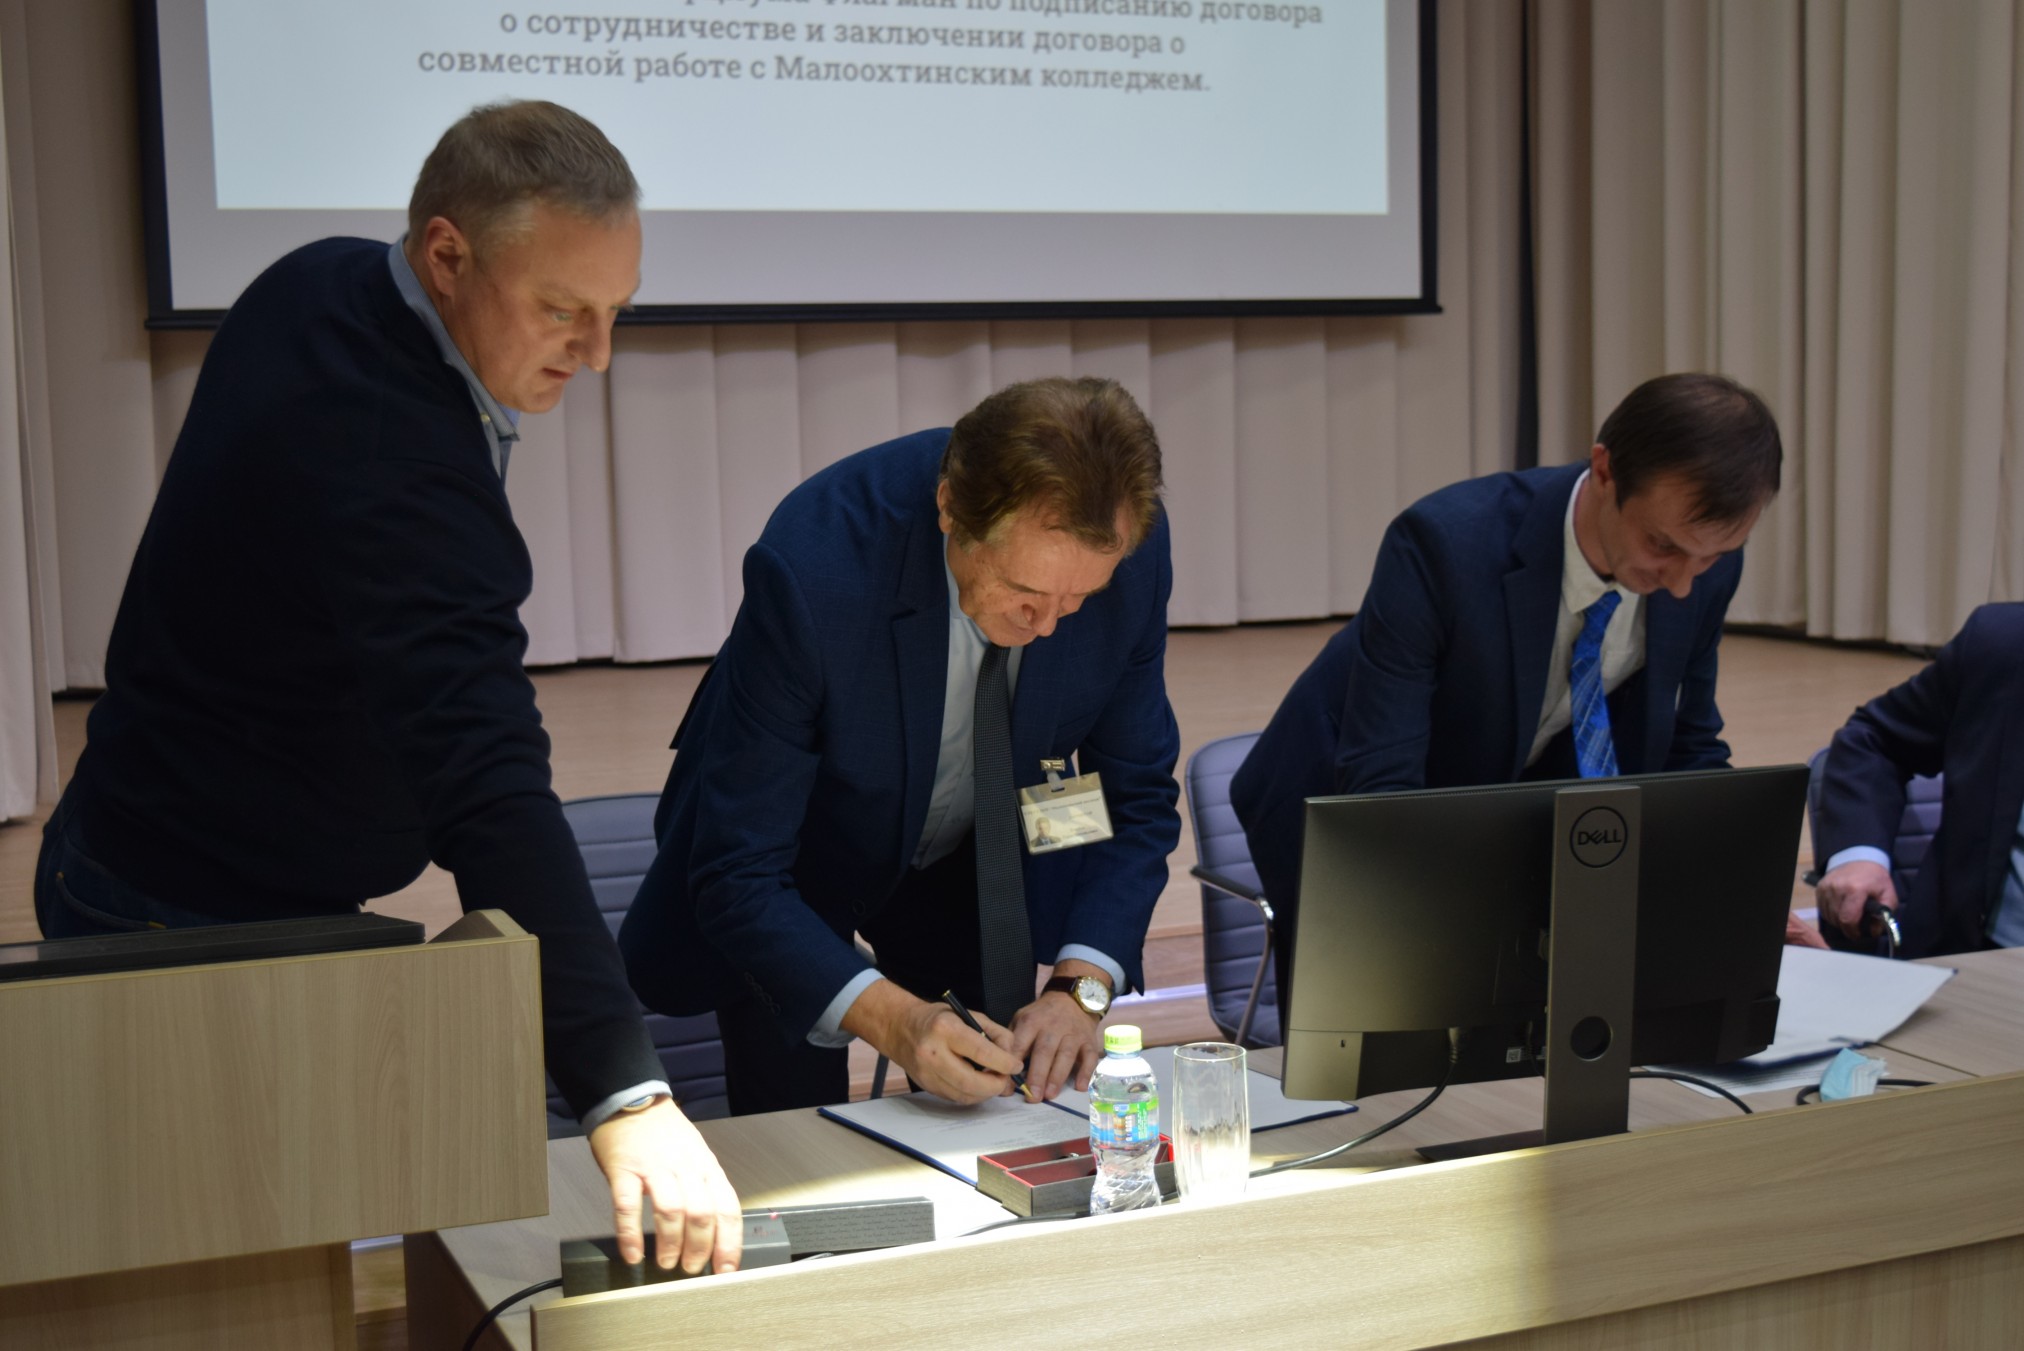 Собрание членов Консорциума Флагман по подписанию договора о сотрудничестве и заключении договора о совместной работе с Малоохтинским колледжем.